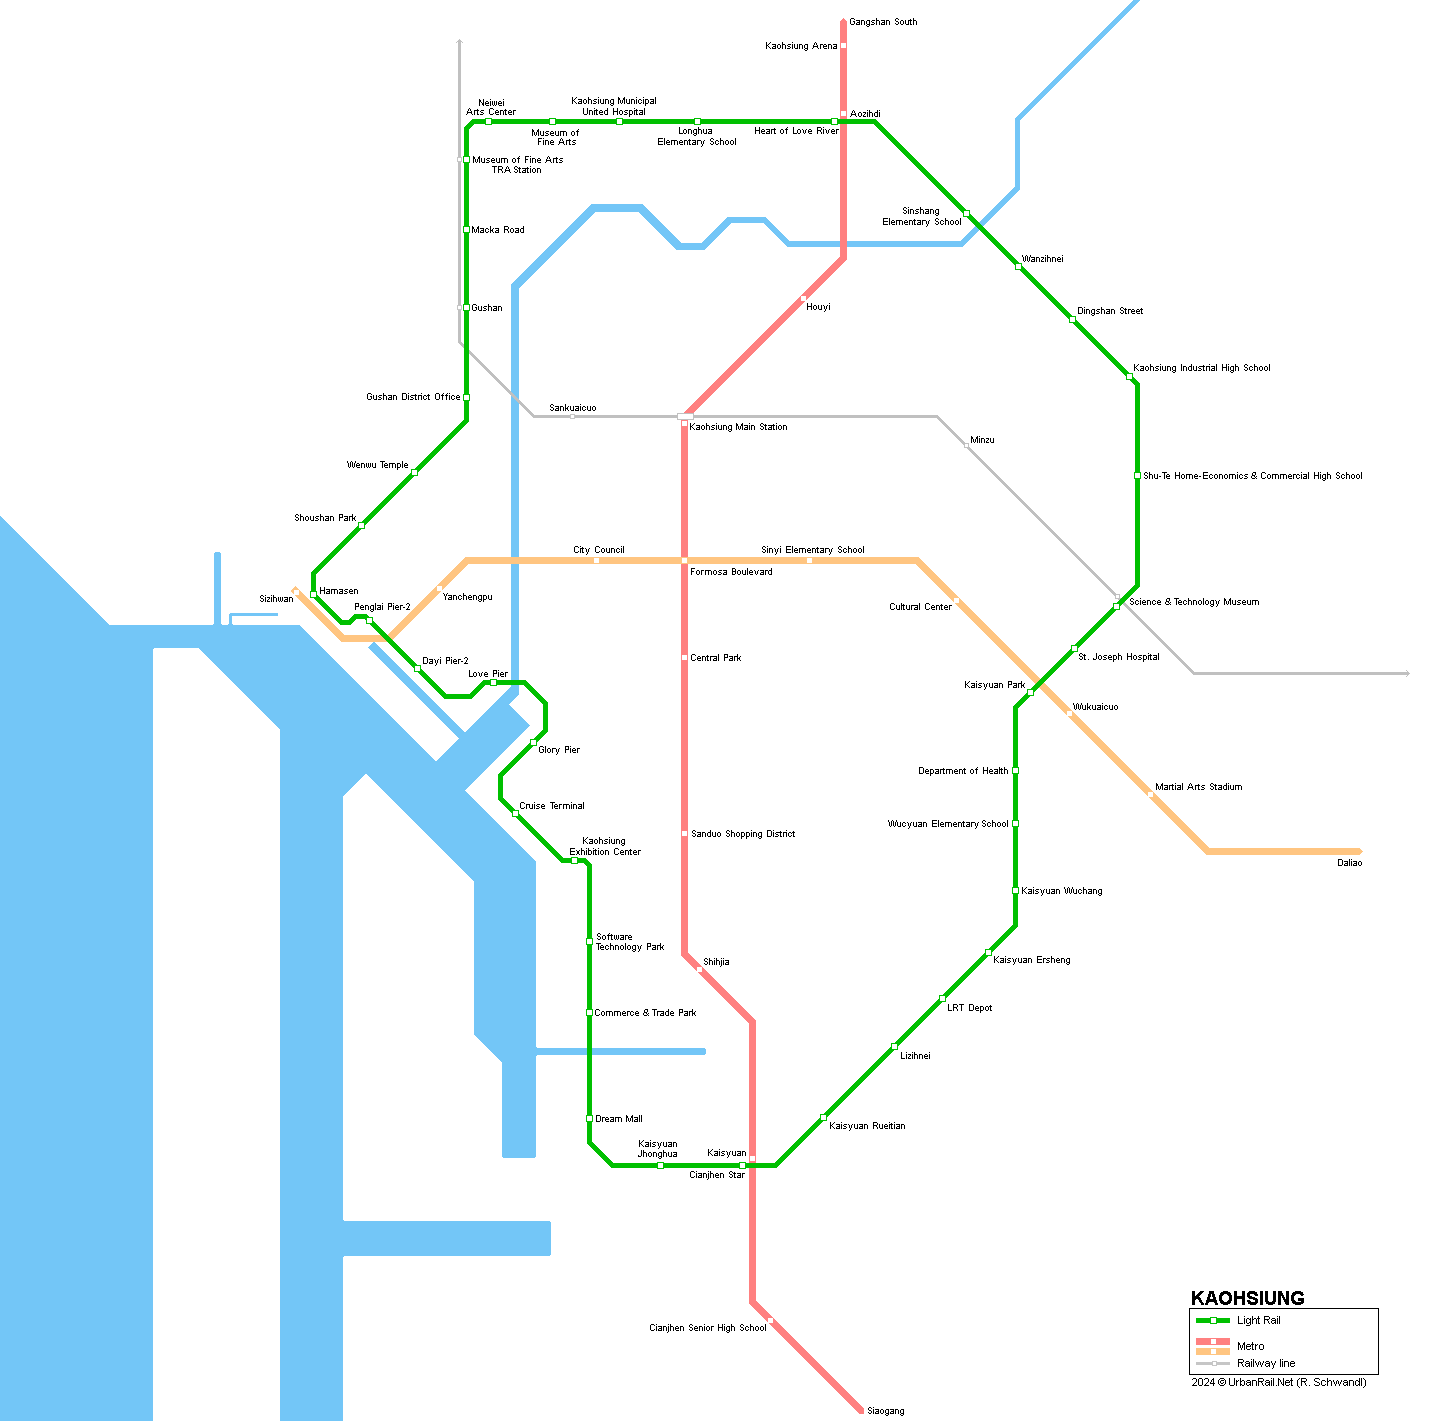 Kaohsiung tram / light rail map